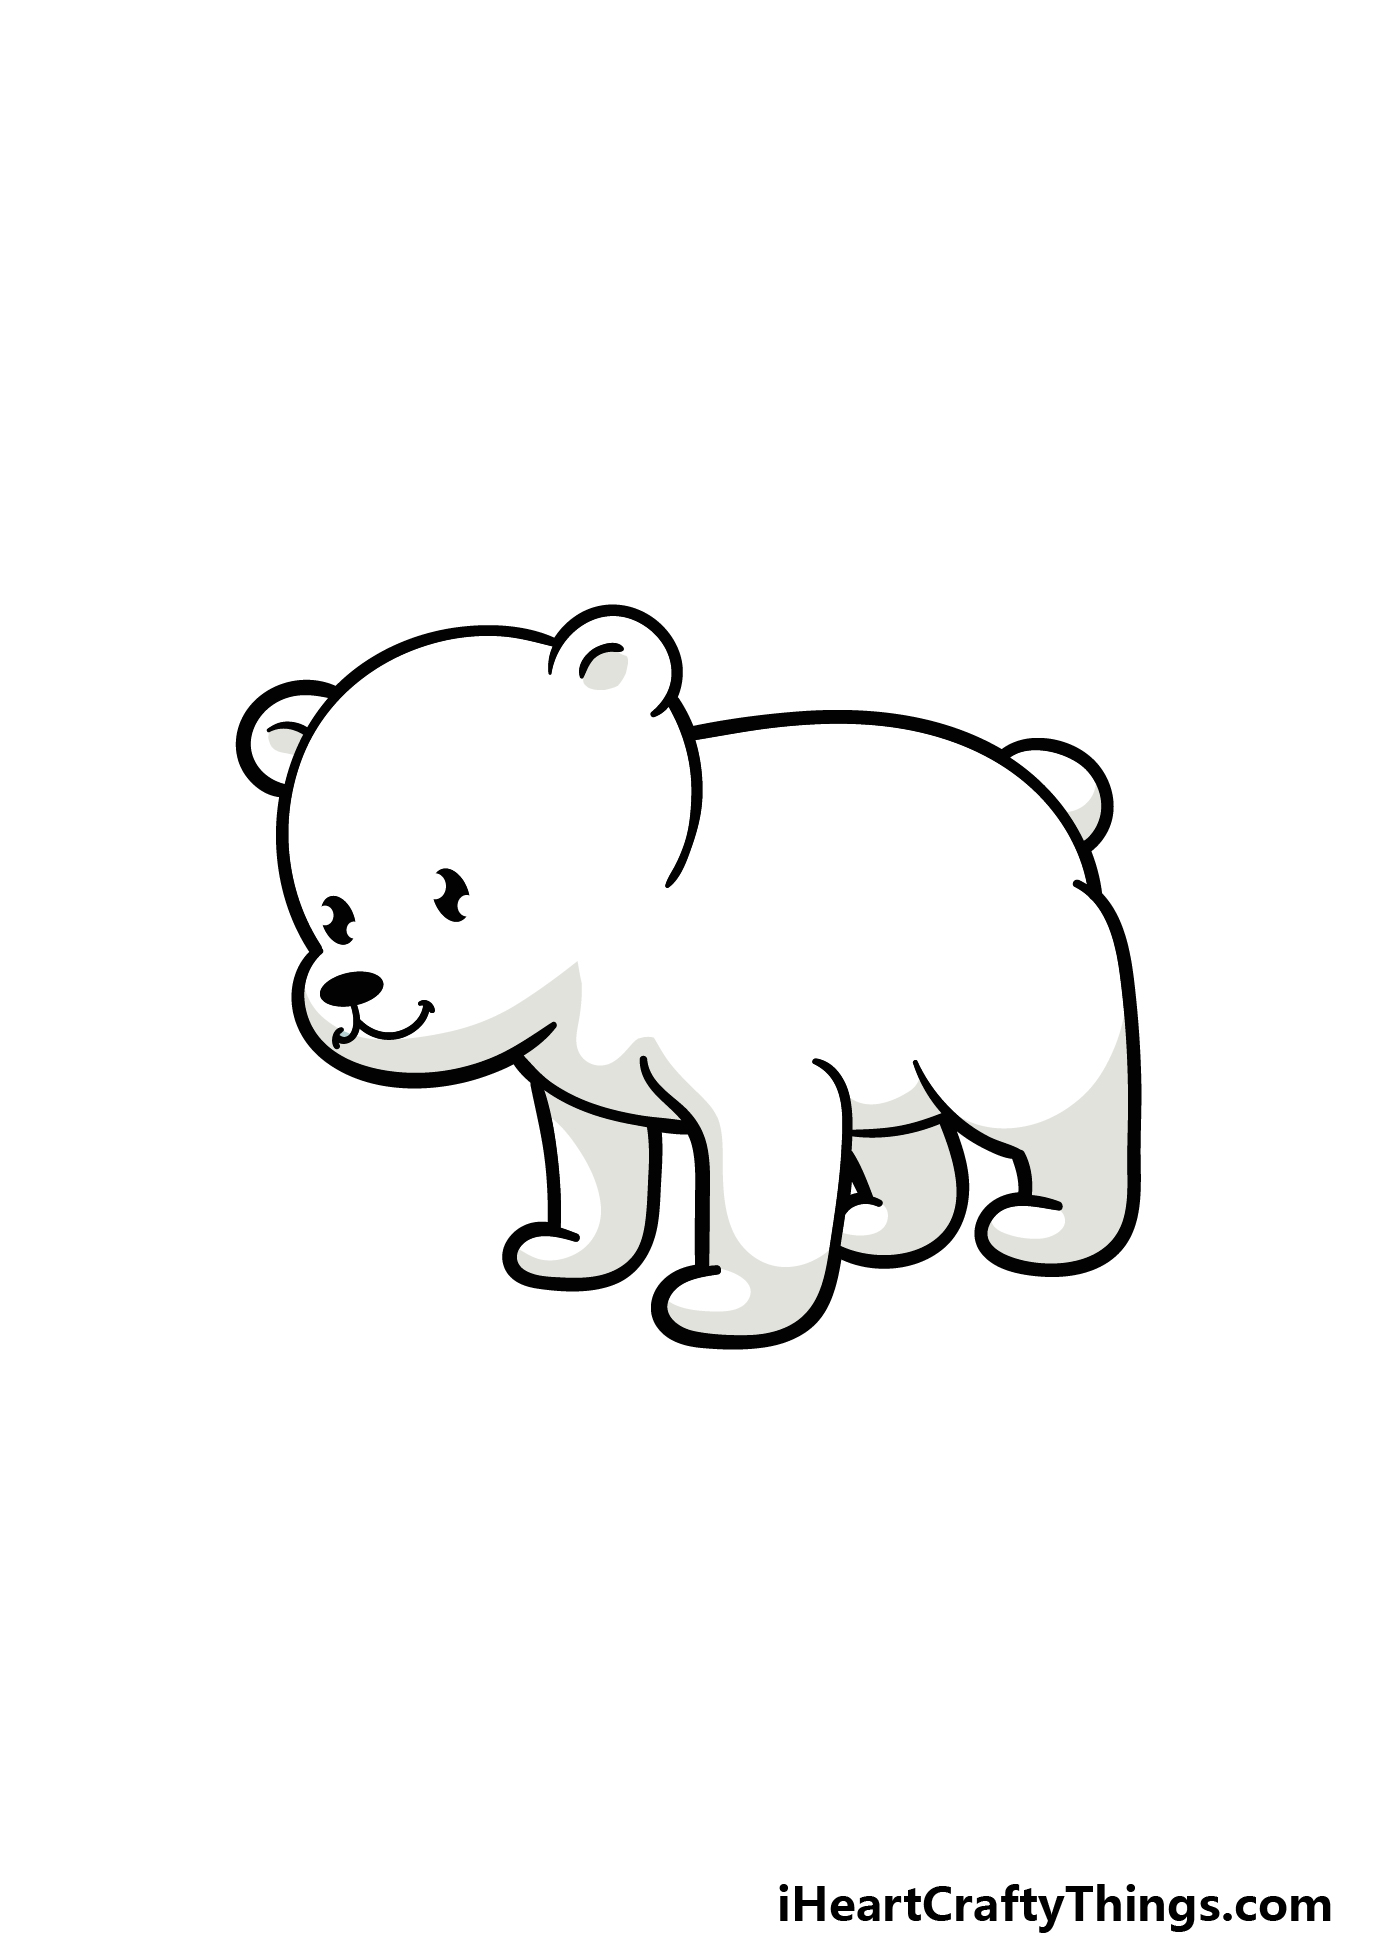 Drawings of polar bears